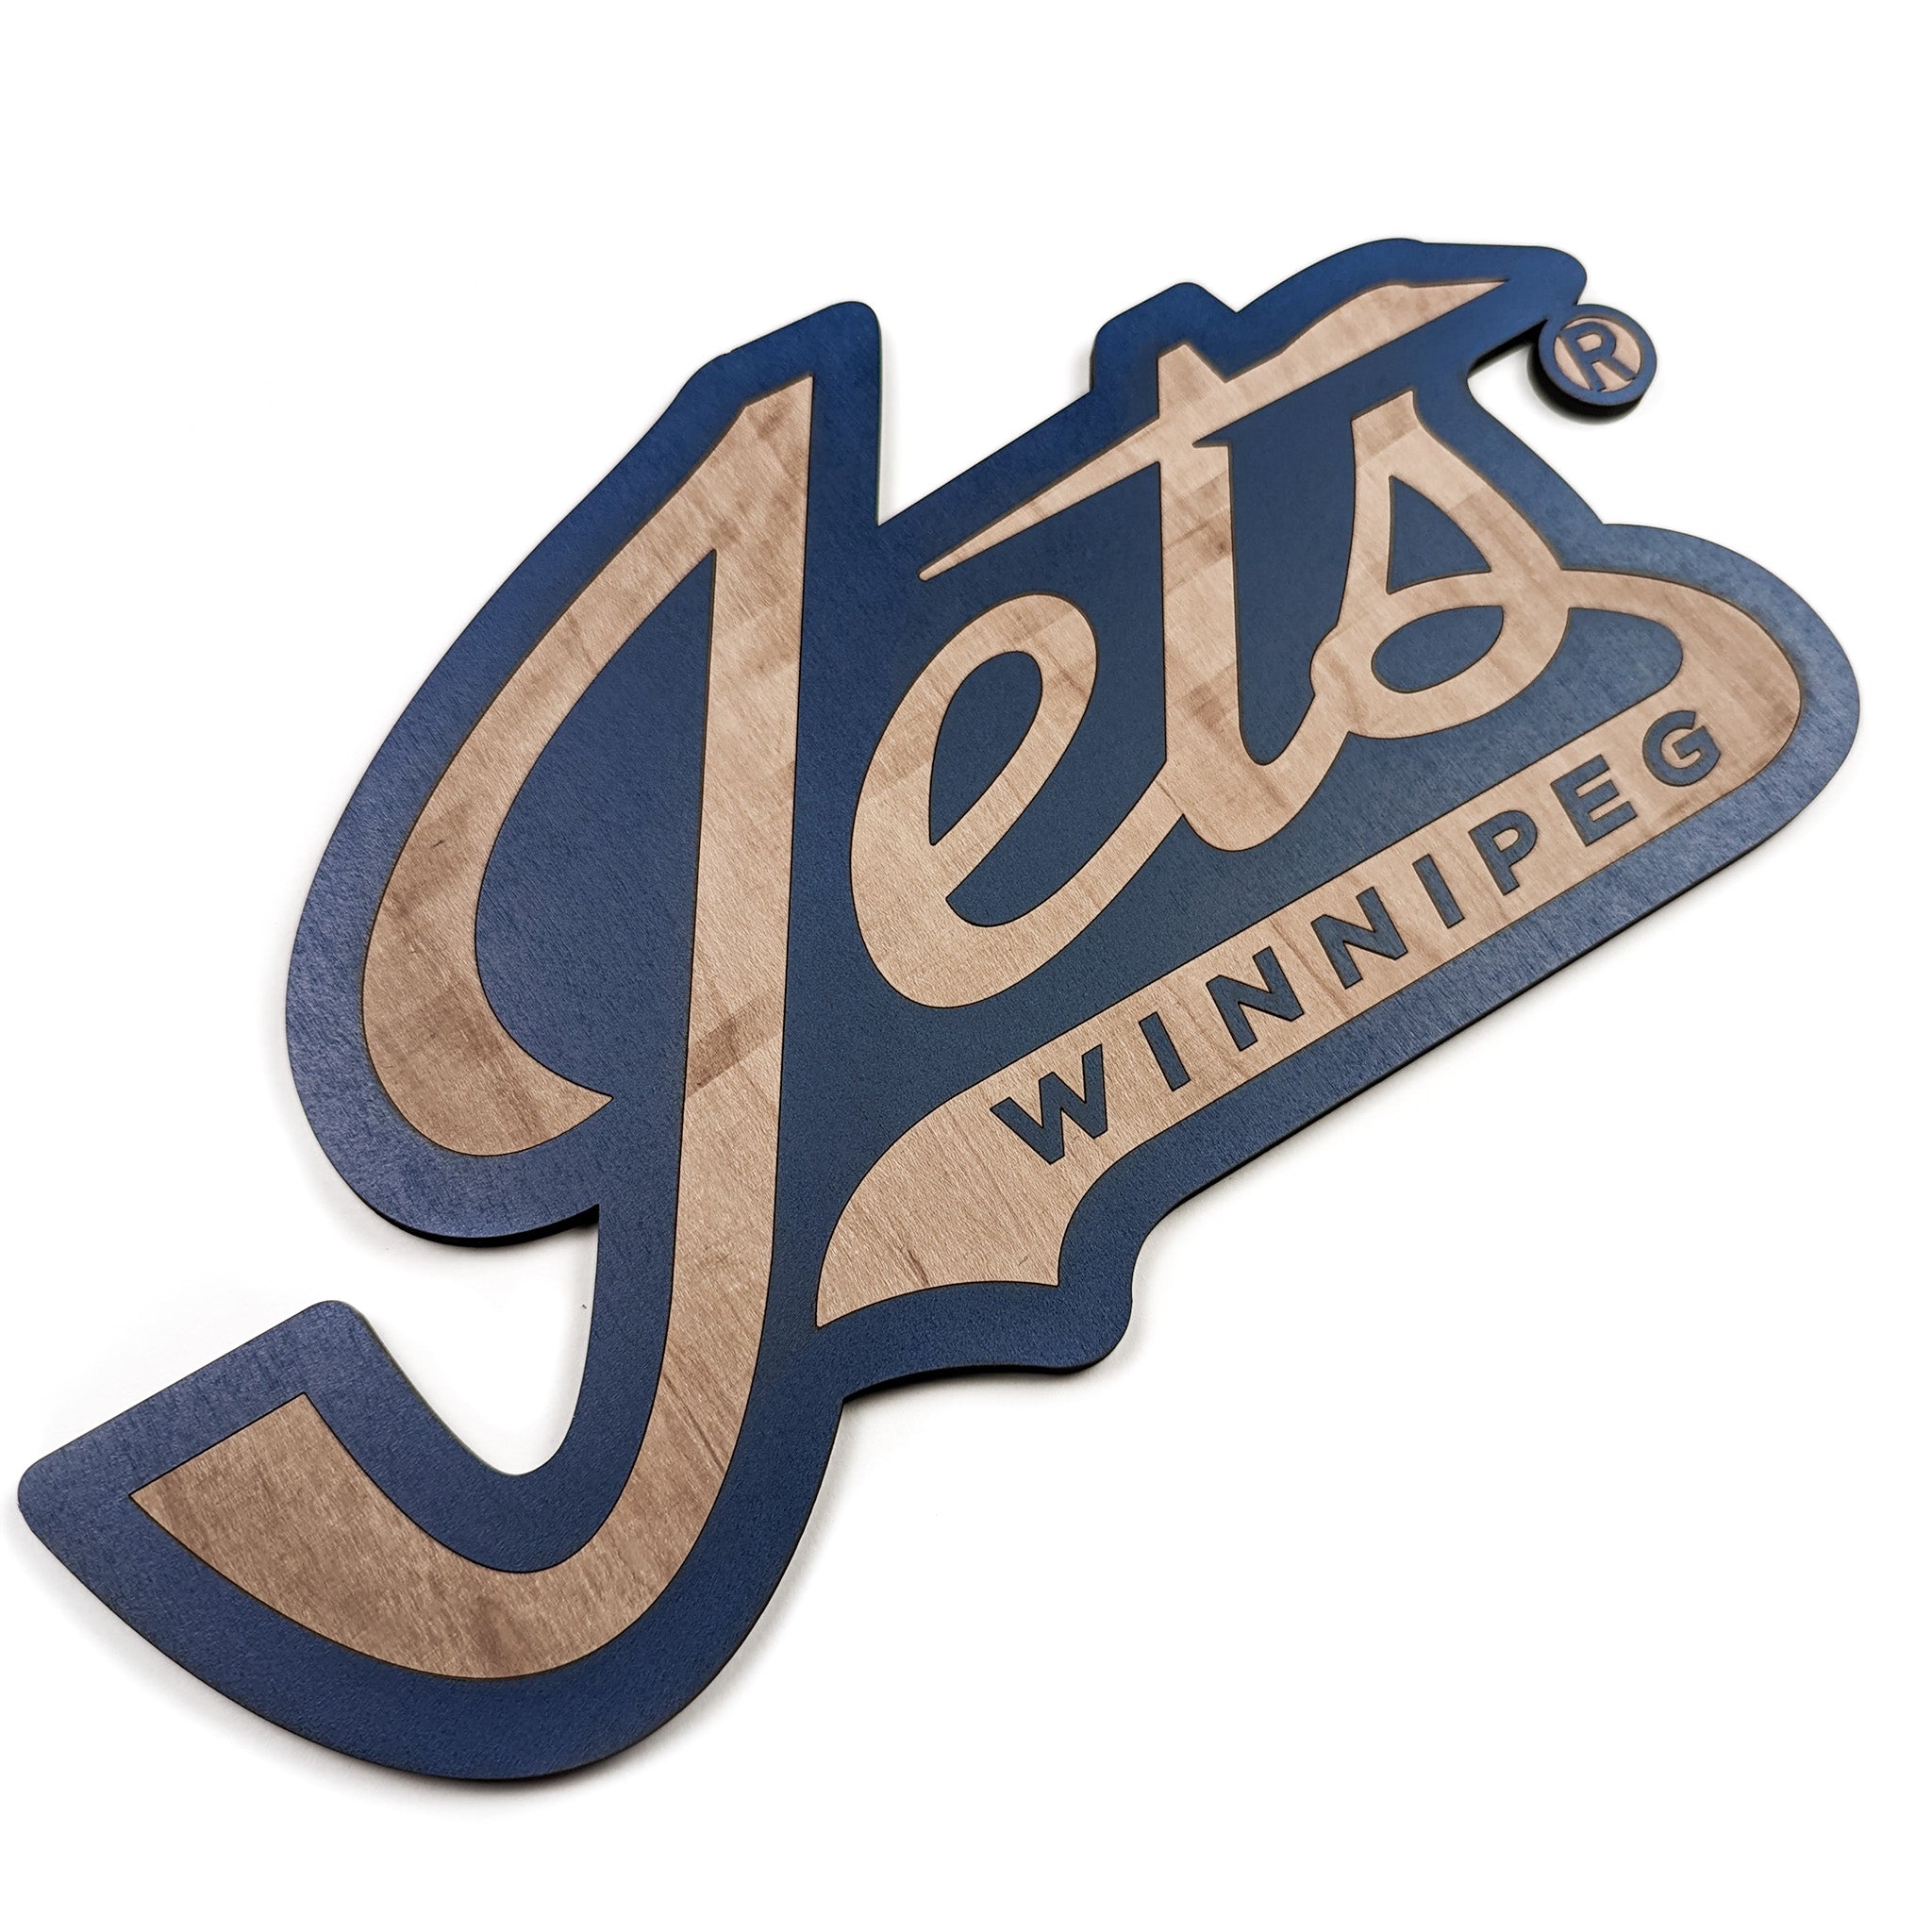 Winnipeg Jets Team Wordmark